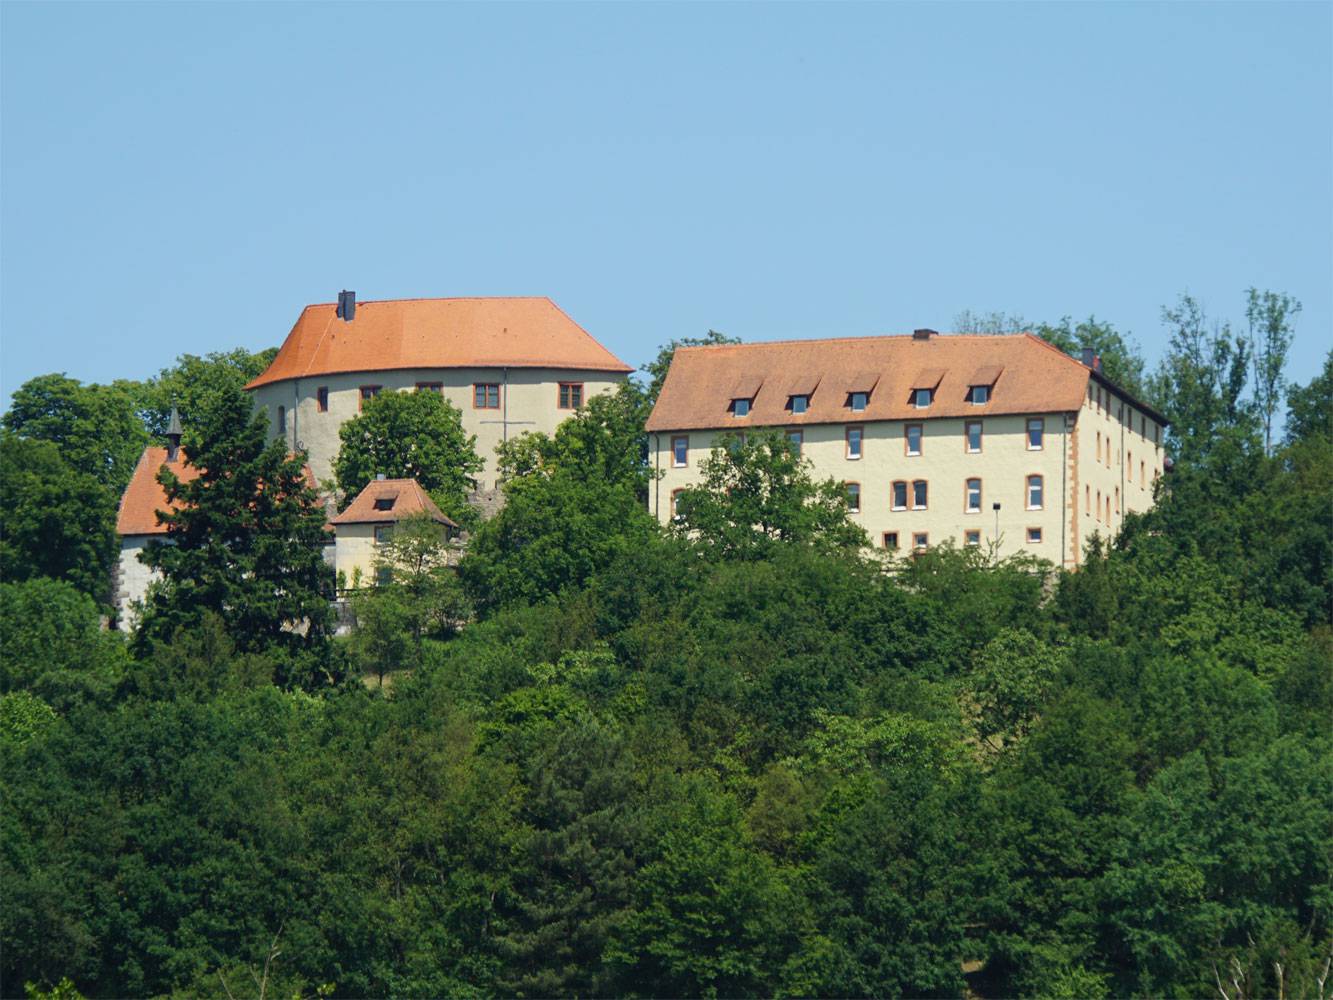 Burg-Reichenberg